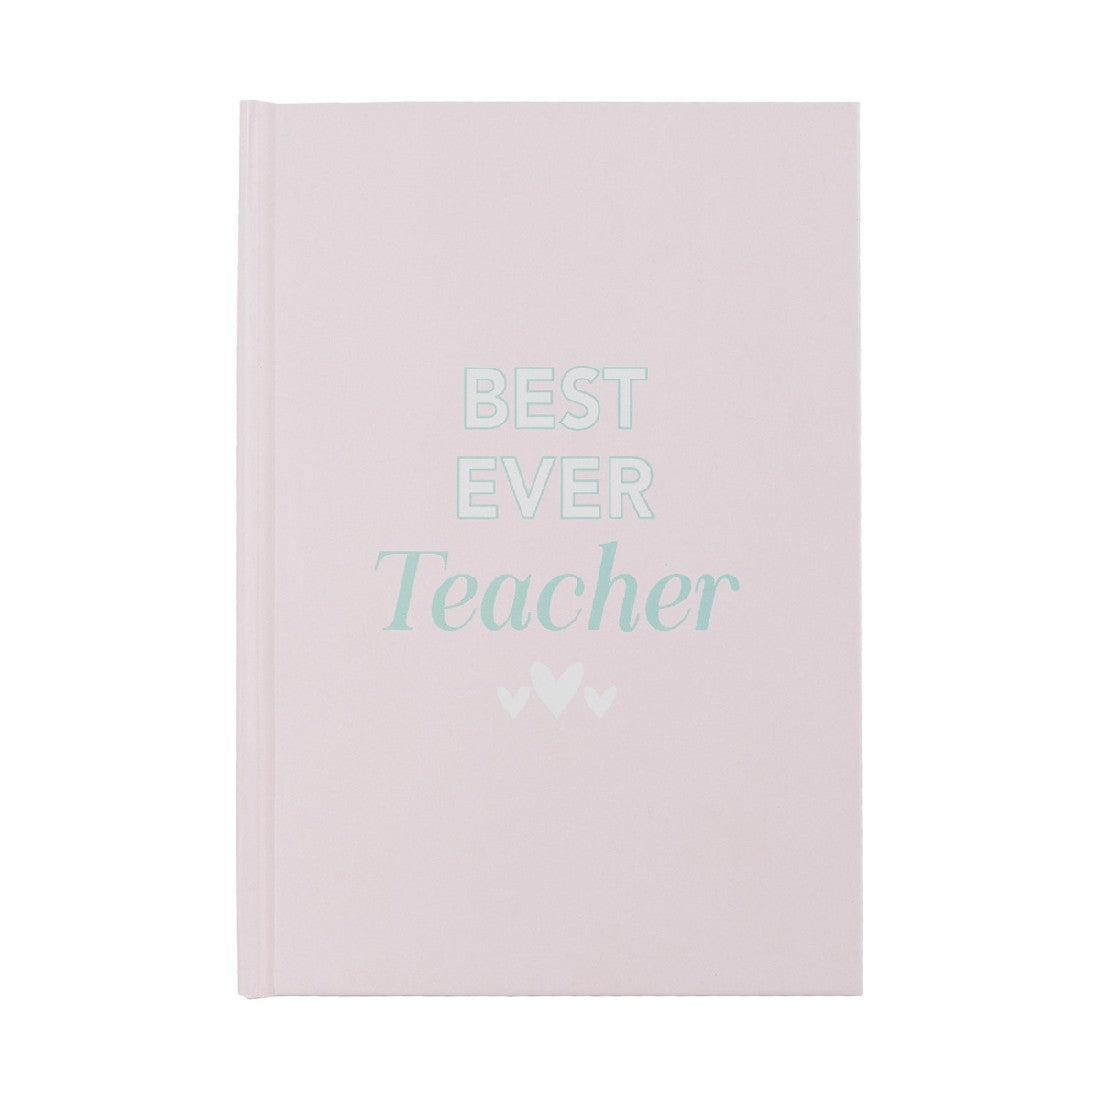 Teacher Journal